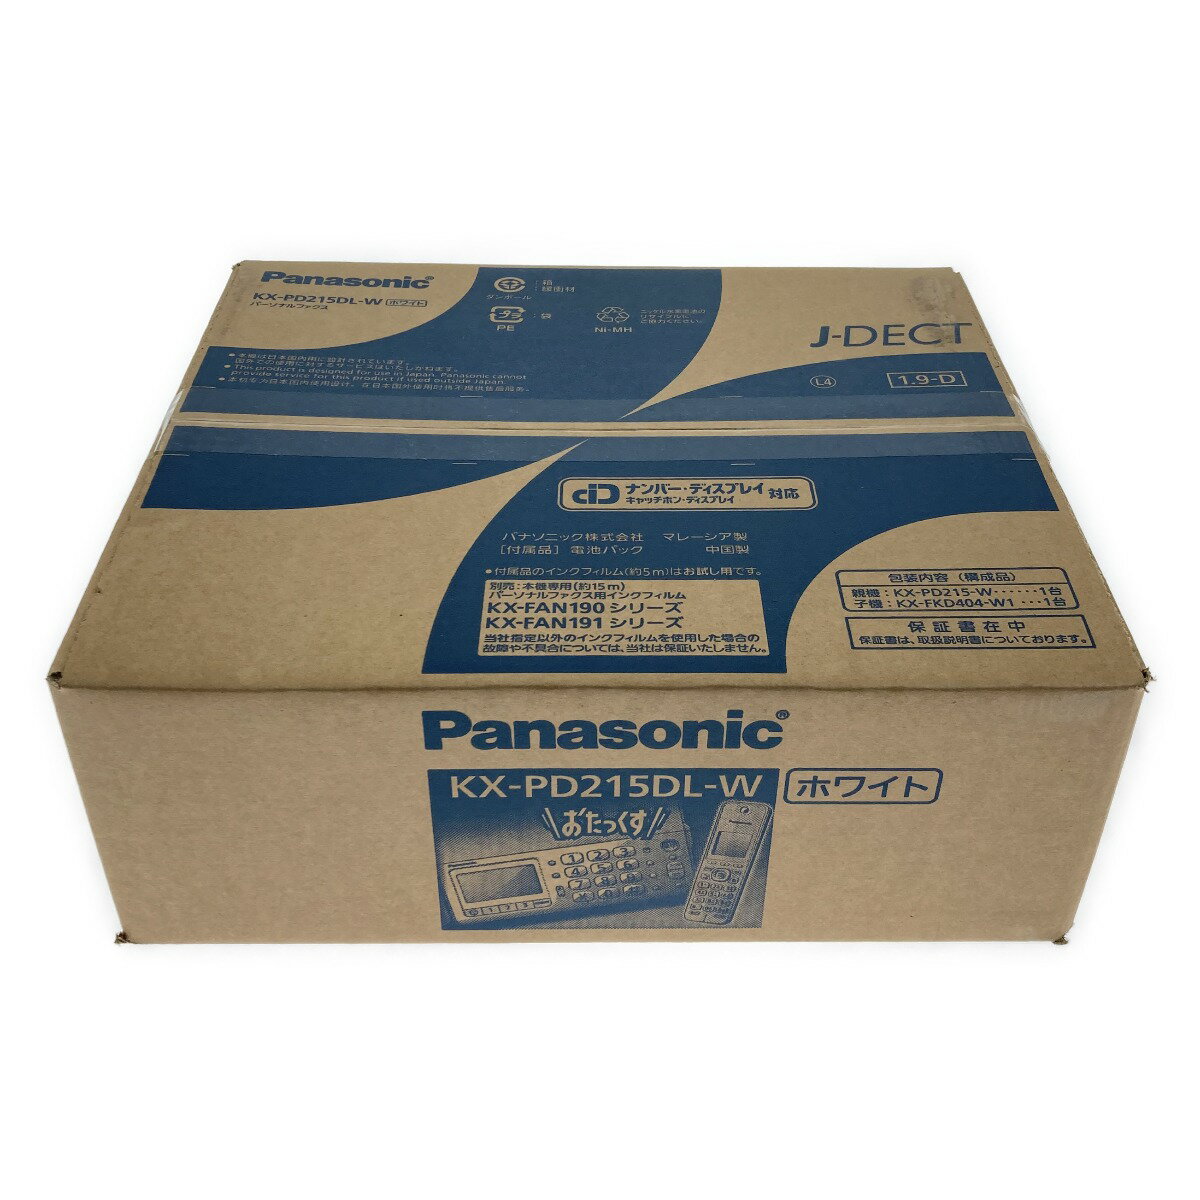 ##【中古】Panasonic パナソニック デジタルコードレス 普通紙 ファクス 子機1台付き KX-PD215DL ホワイト FAX 電話機 Sランク